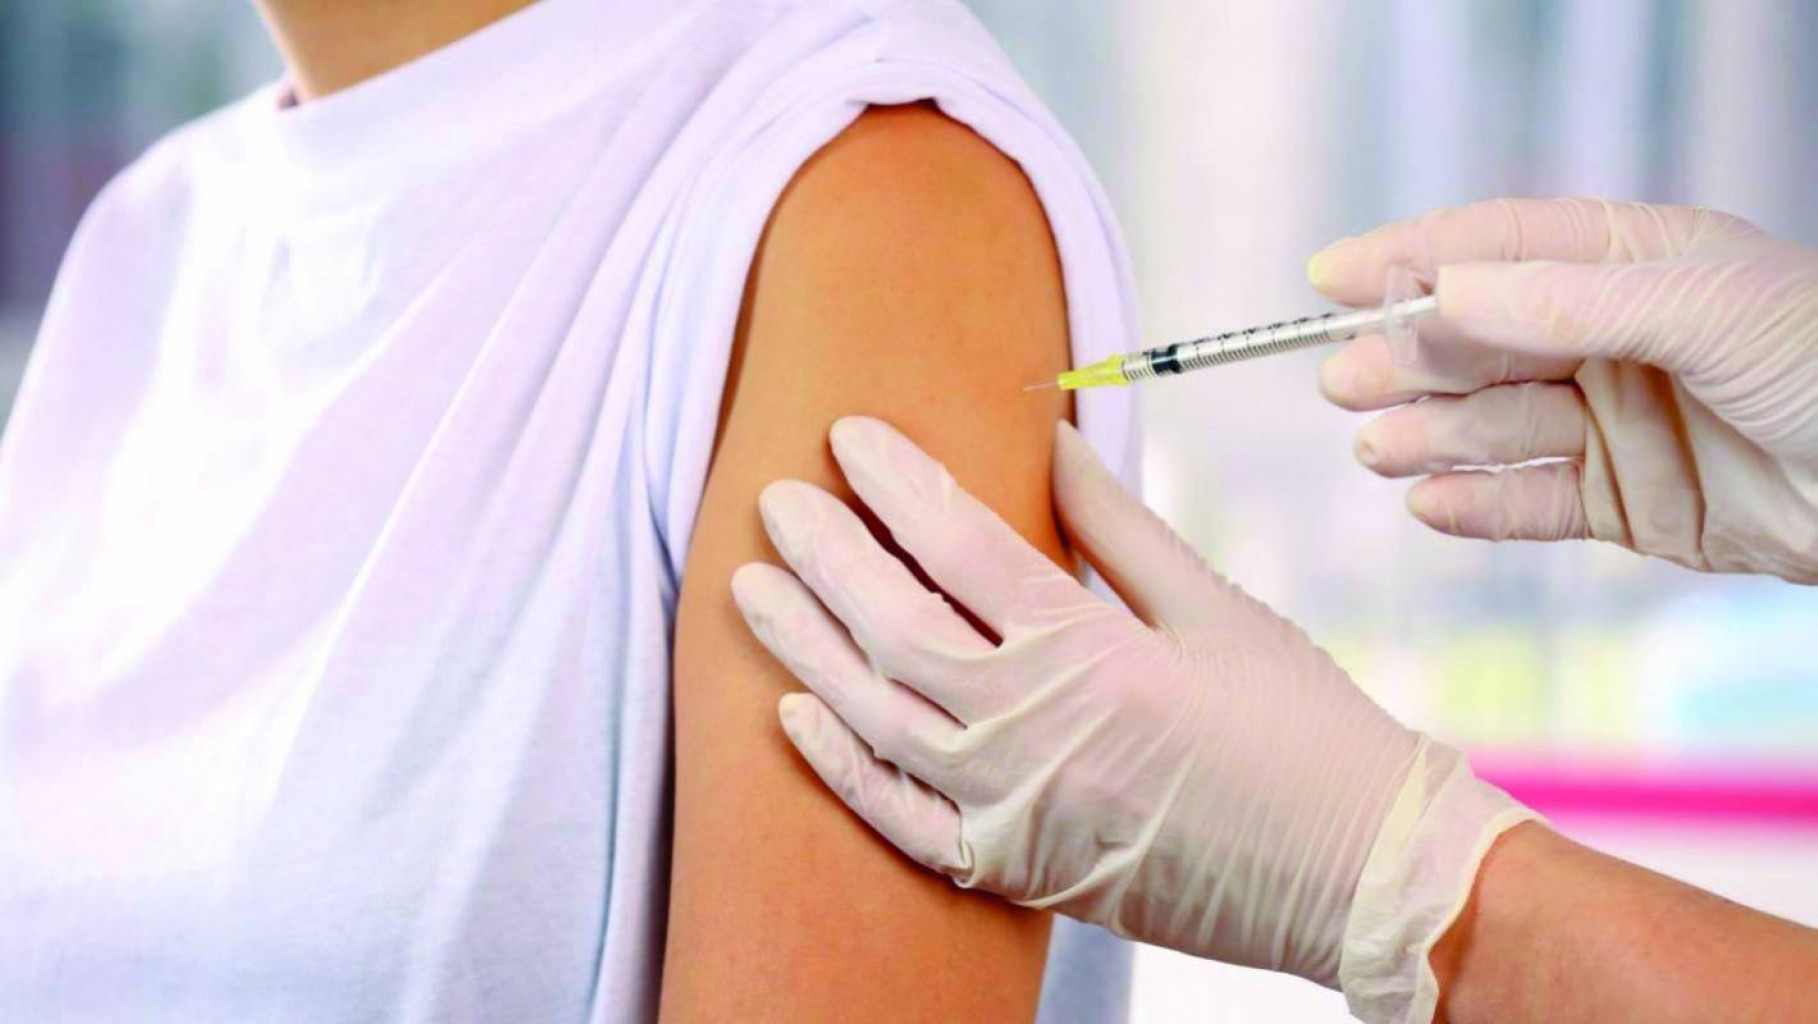 Personas en 6 continentes prueban vacunas contra el COVID-19